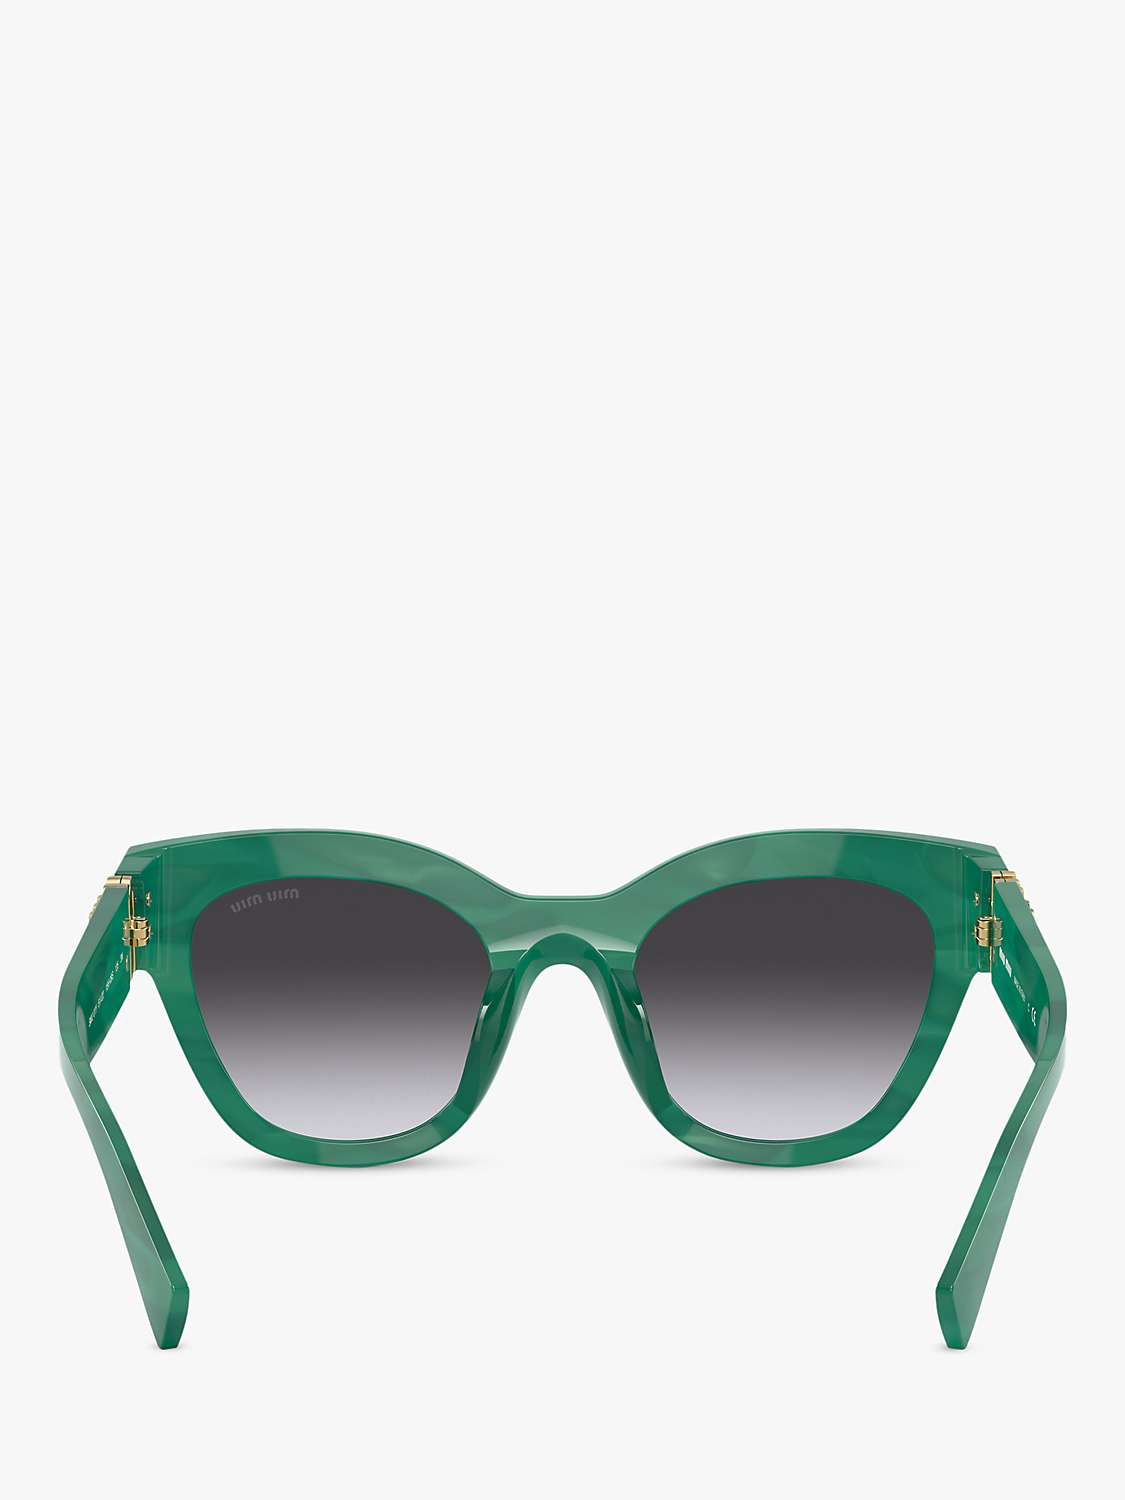 Buy Miu Miu MU 01YS Women's Square Sunglasses, Green/Grey Gradient Online at johnlewis.com